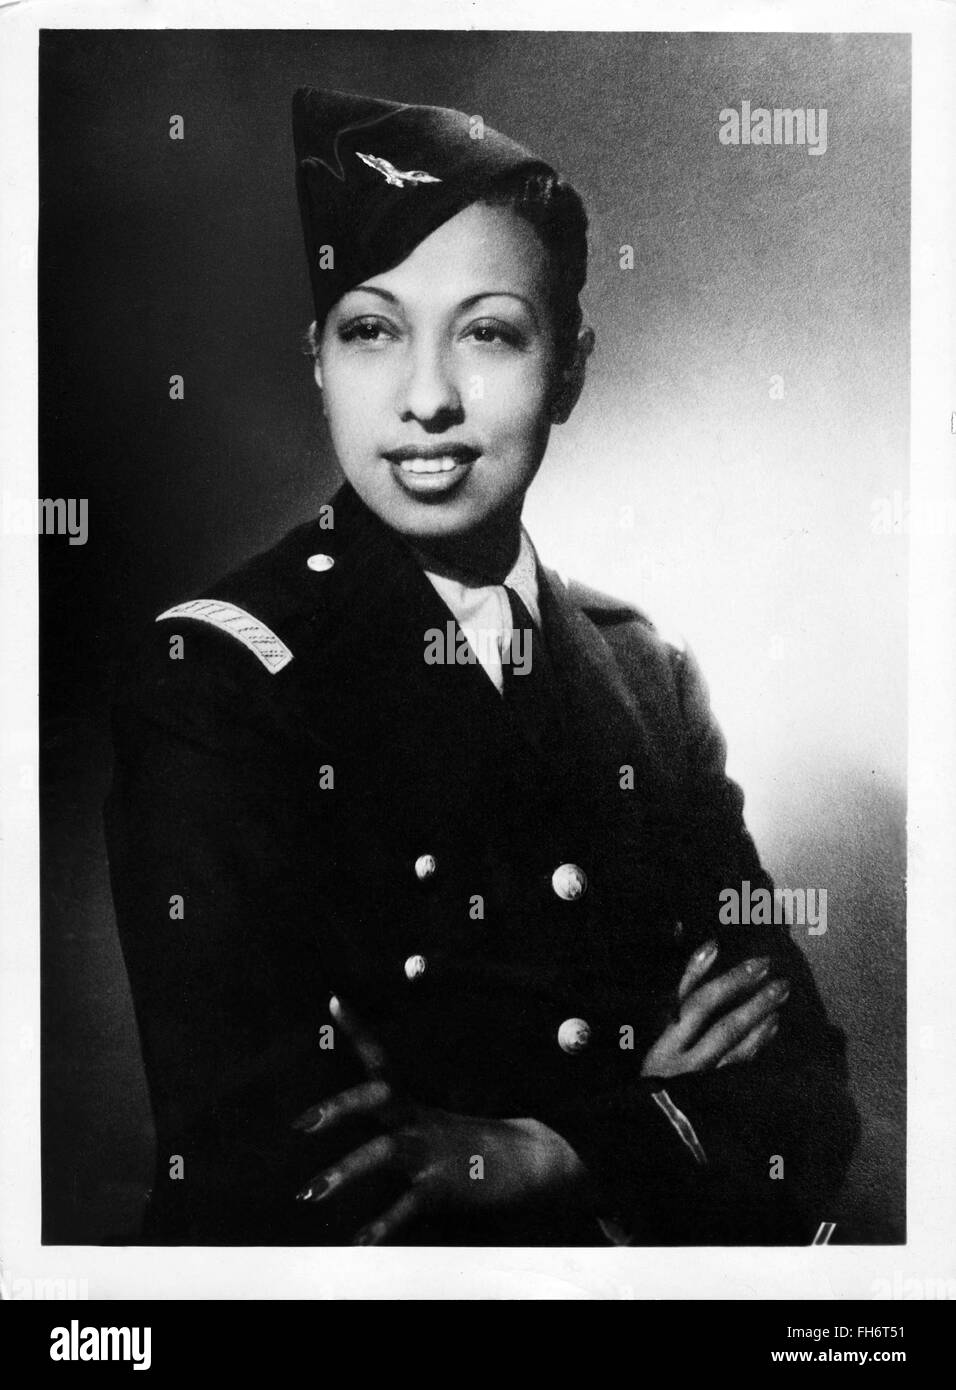 Retrato de Josephine Baker en uniforme - SEGUNDA GUERRA MUNDIAL Foto de stock